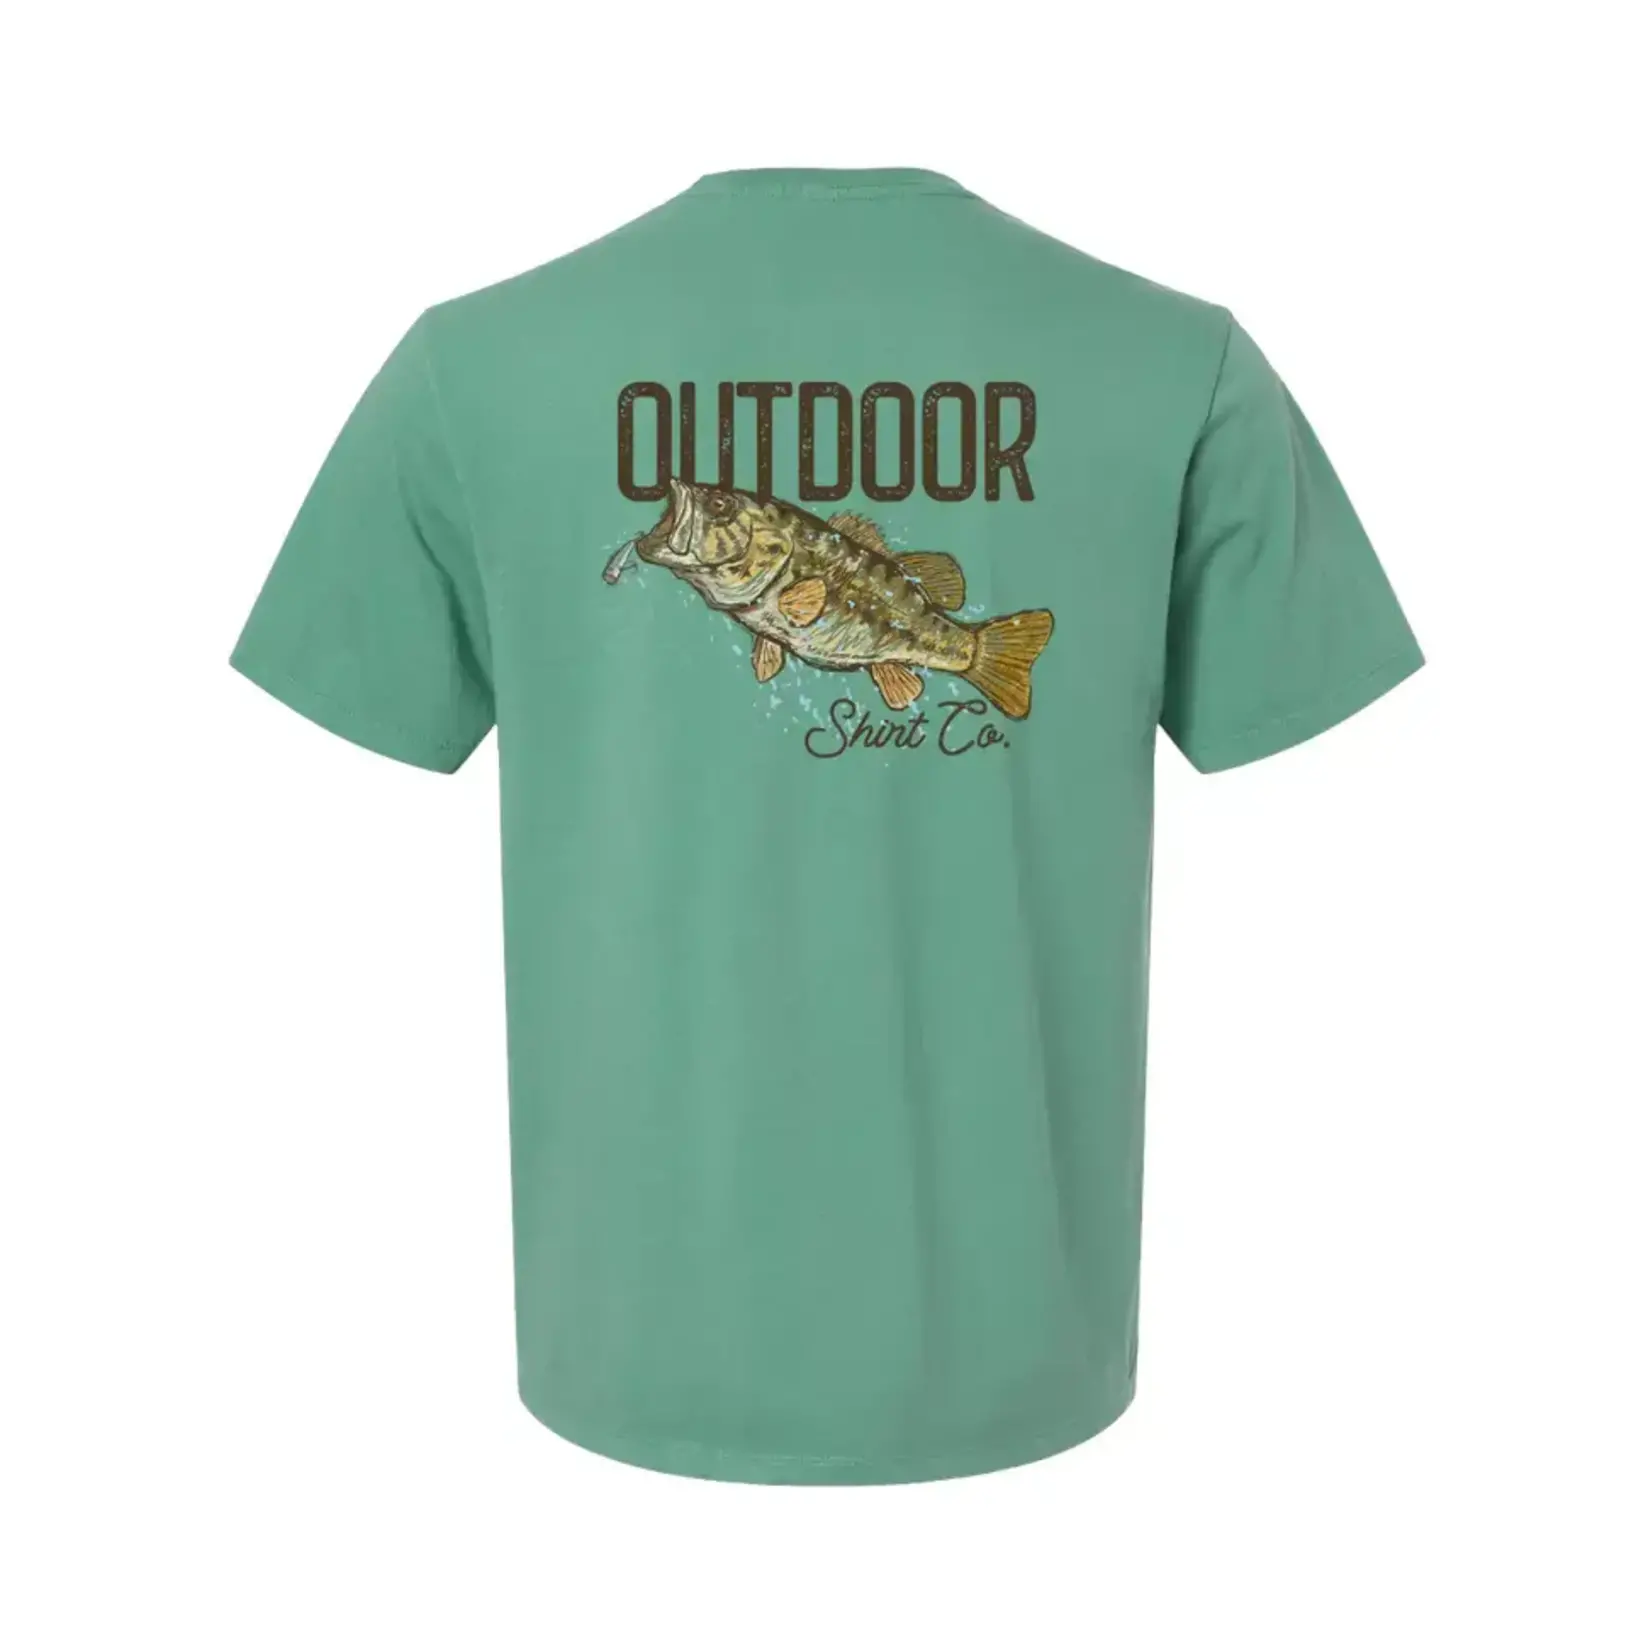 Outdoor Shirt Co. Outdoor Shirt Co. Bass S/S TEE Shirt